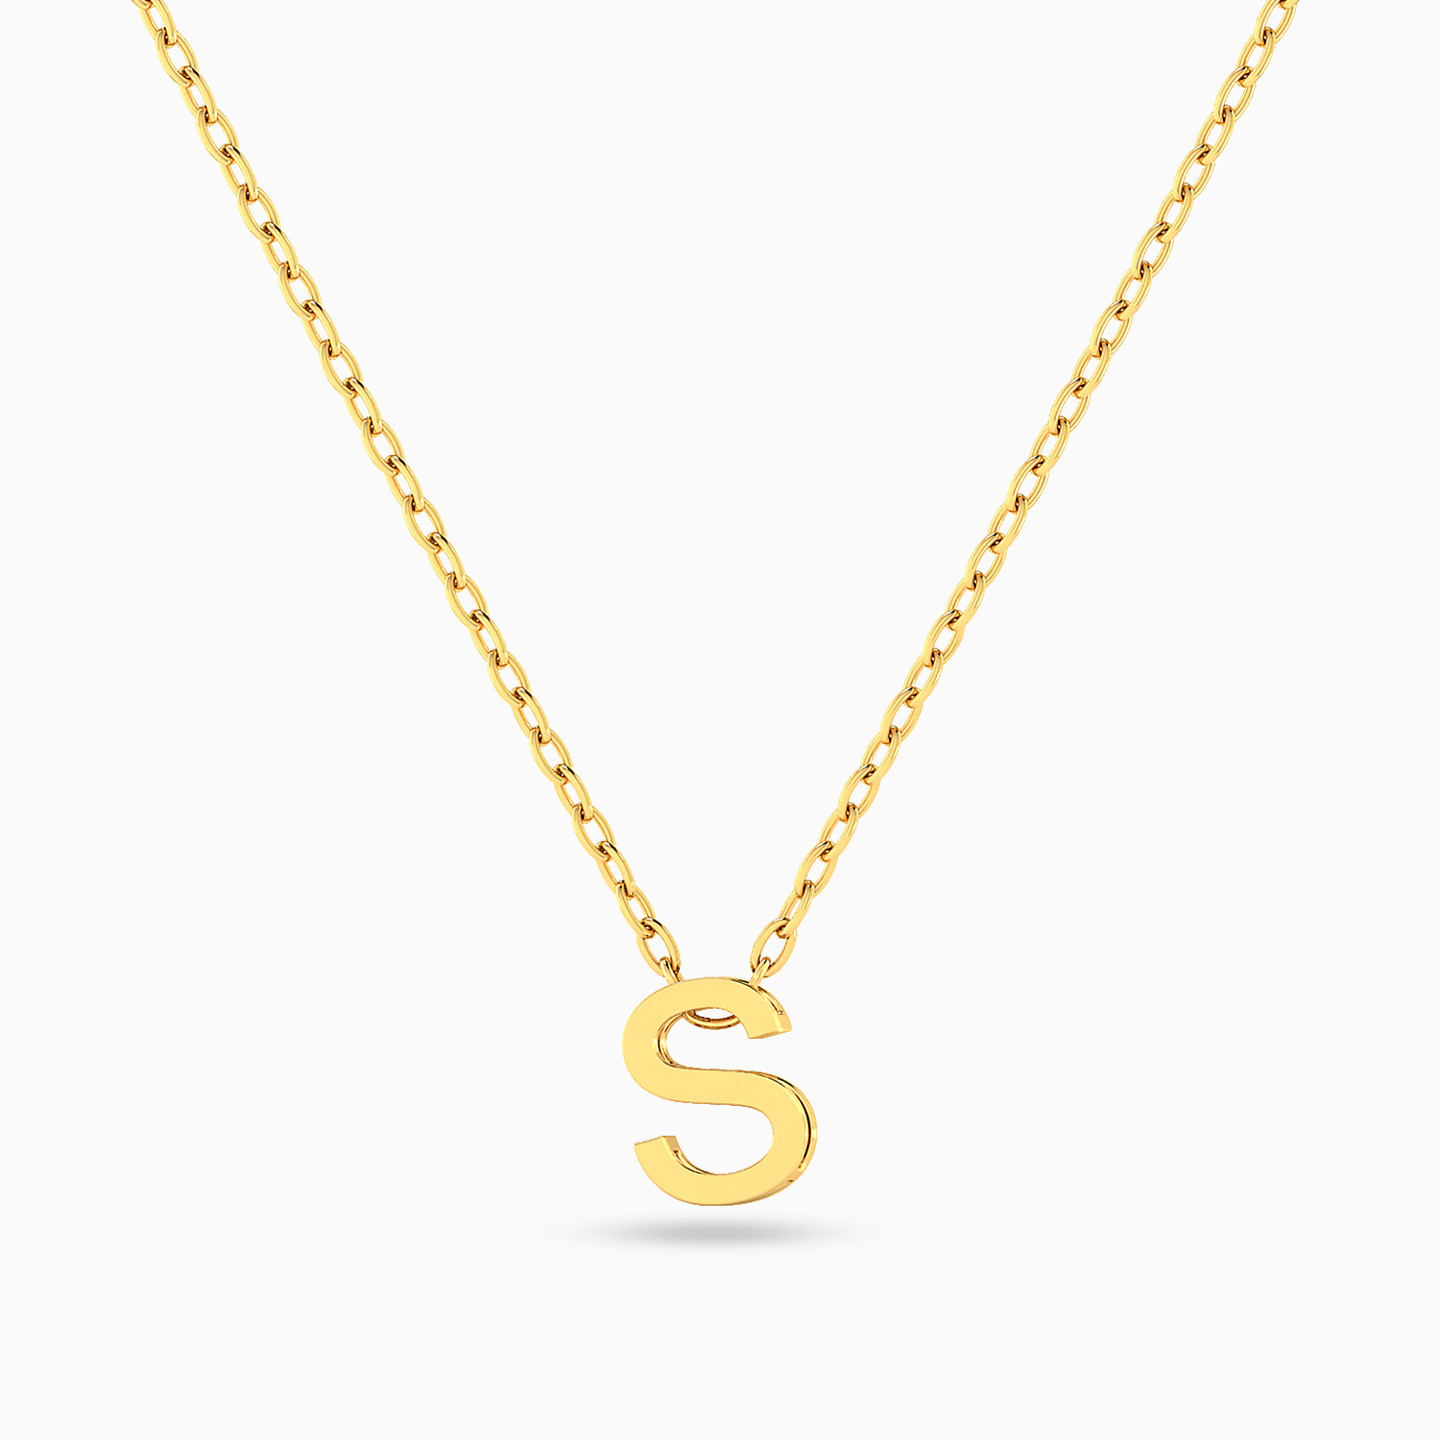 18K Gold Pendant Necklace - 3